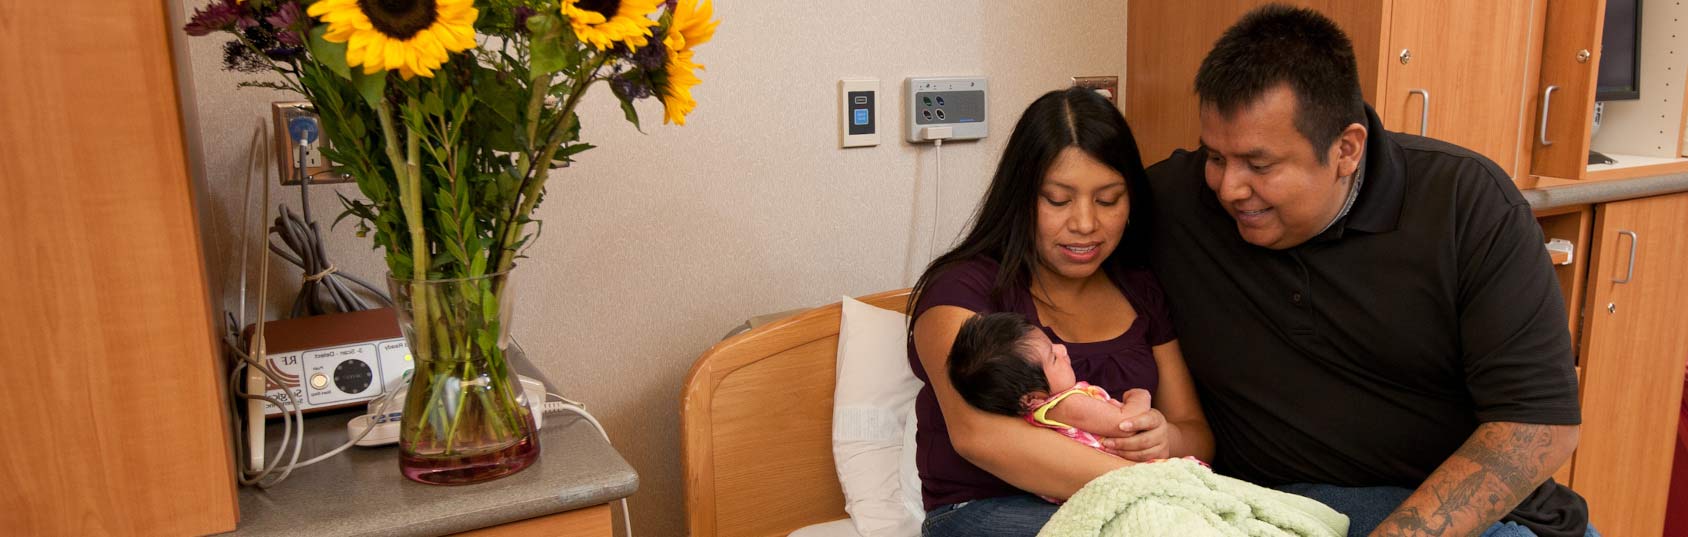 Genitori seduti nel letto d'ospedale che sorridono al neonato.